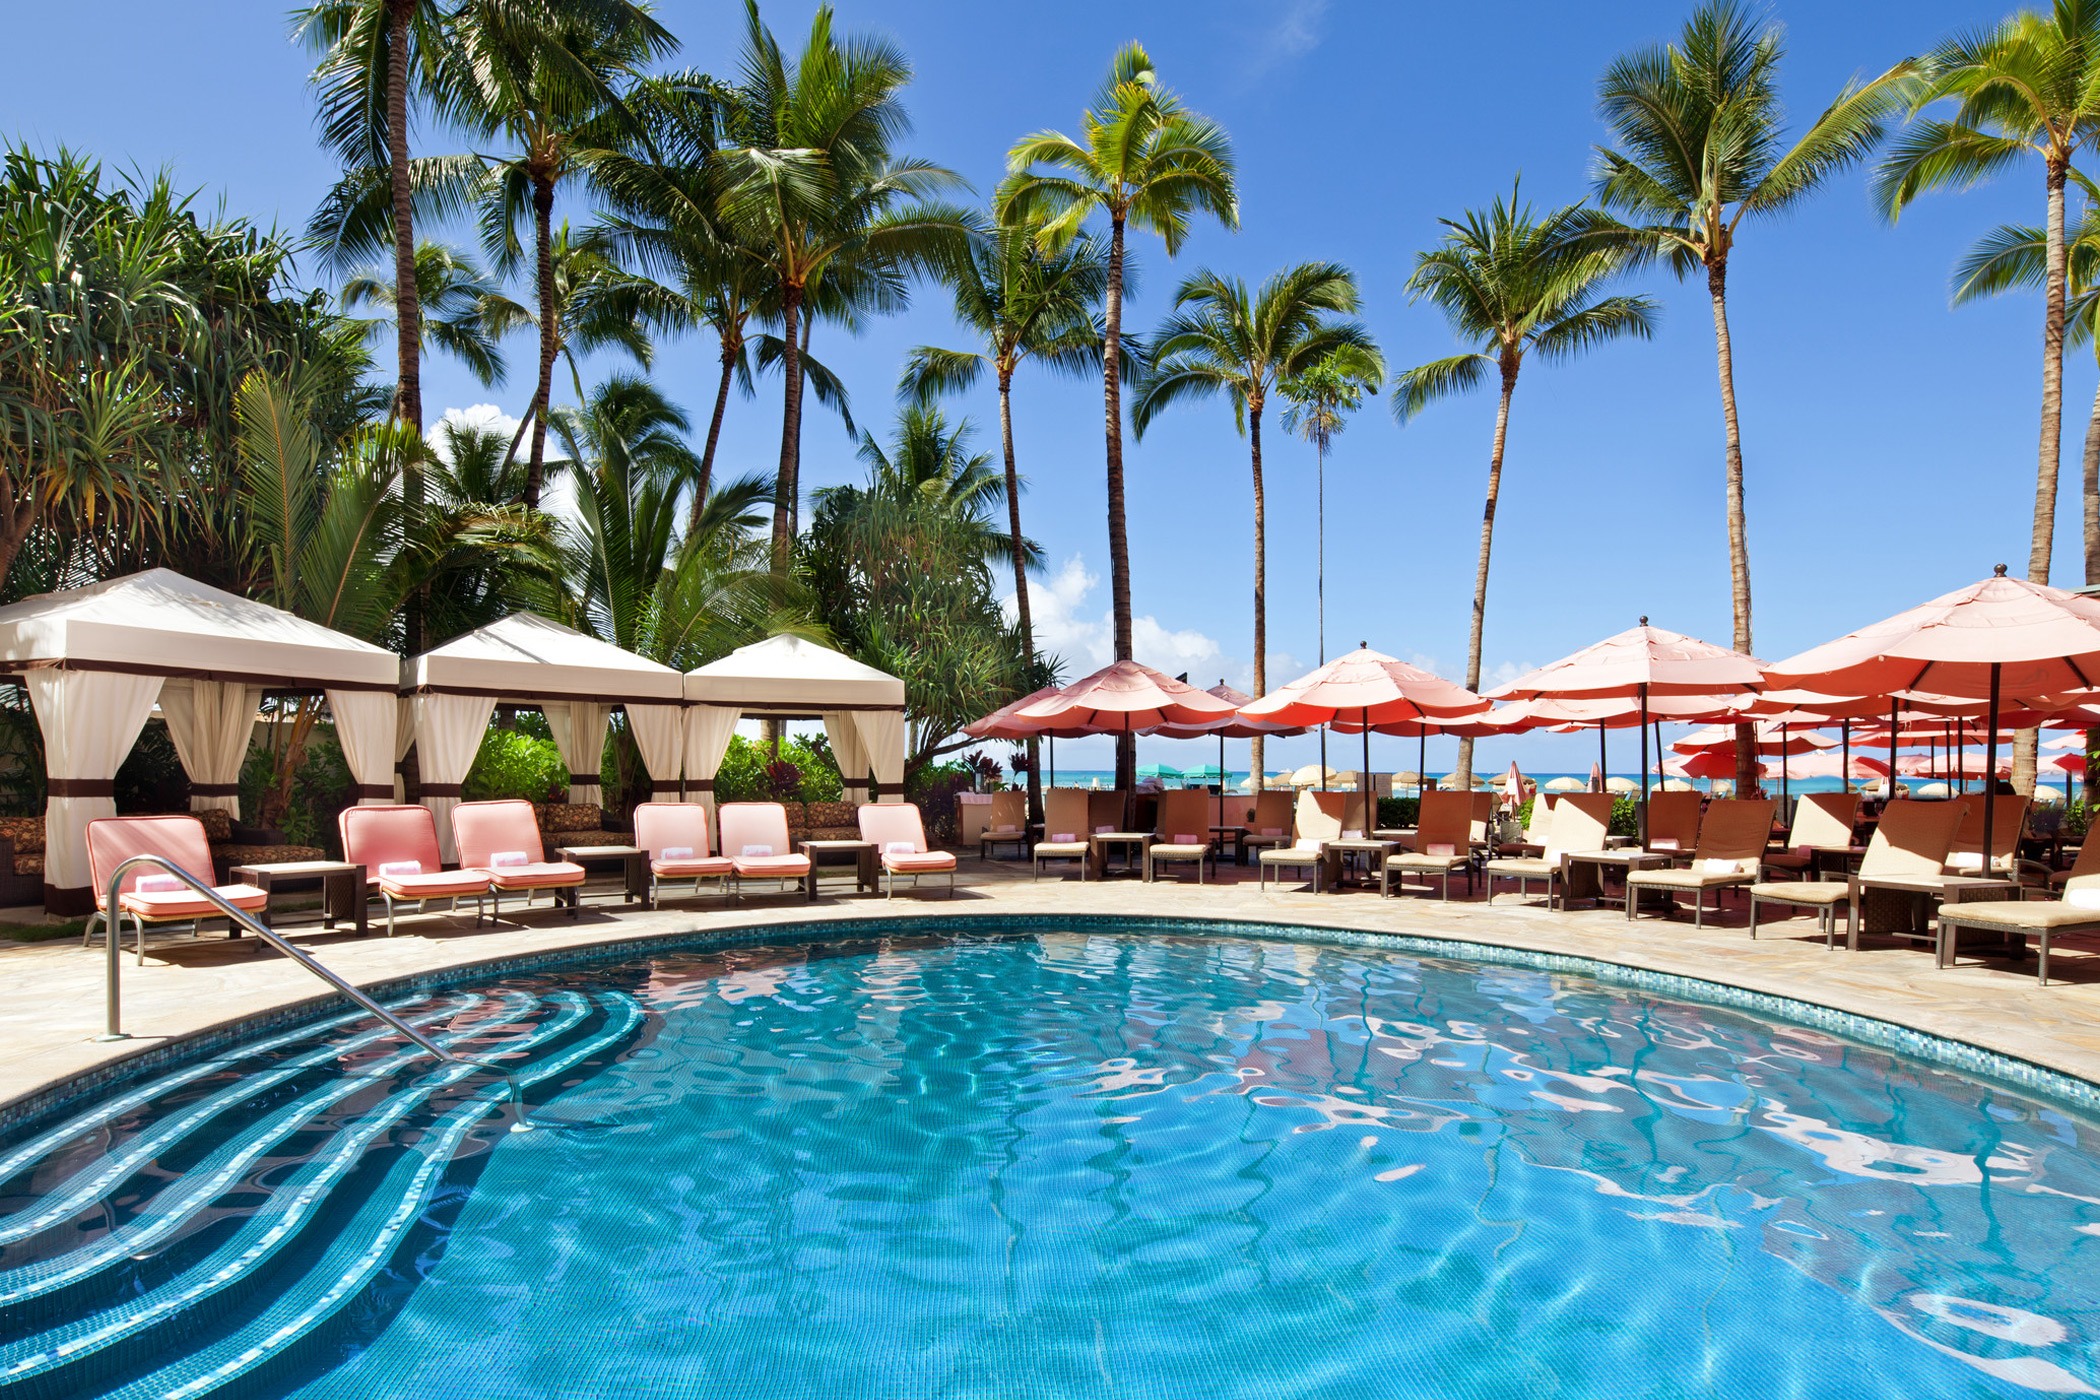 Waikiki Hotel Pool Umbrella Rental The Royal Hawaiian